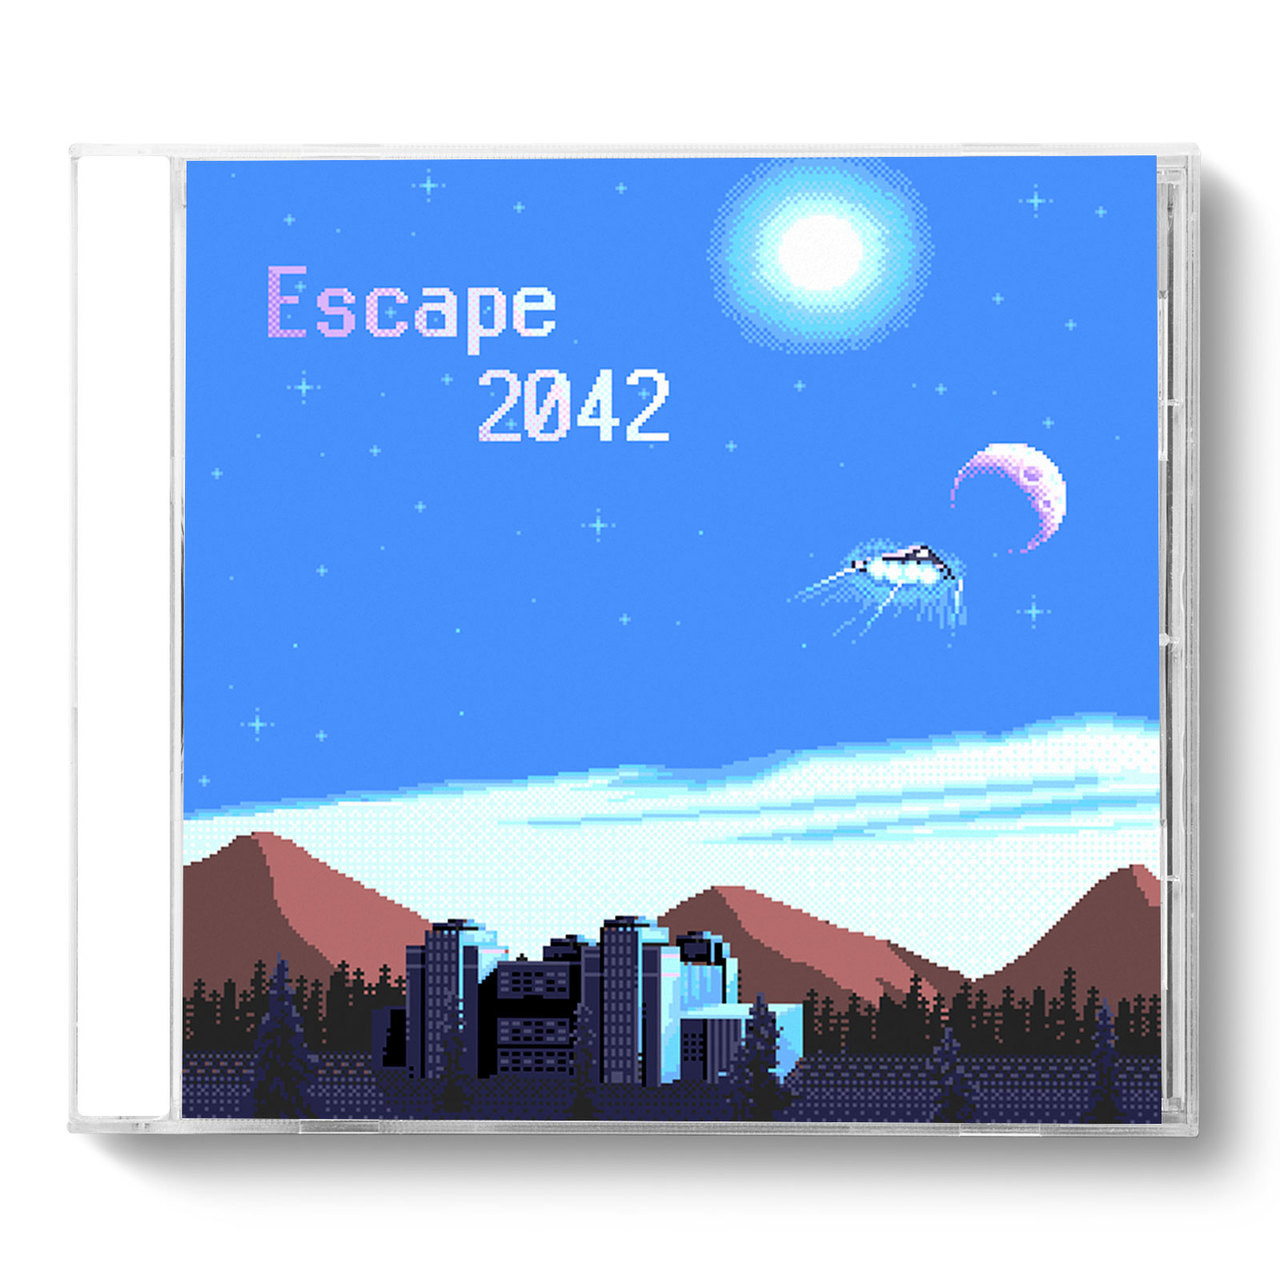 Escape The Prison - Speedrun